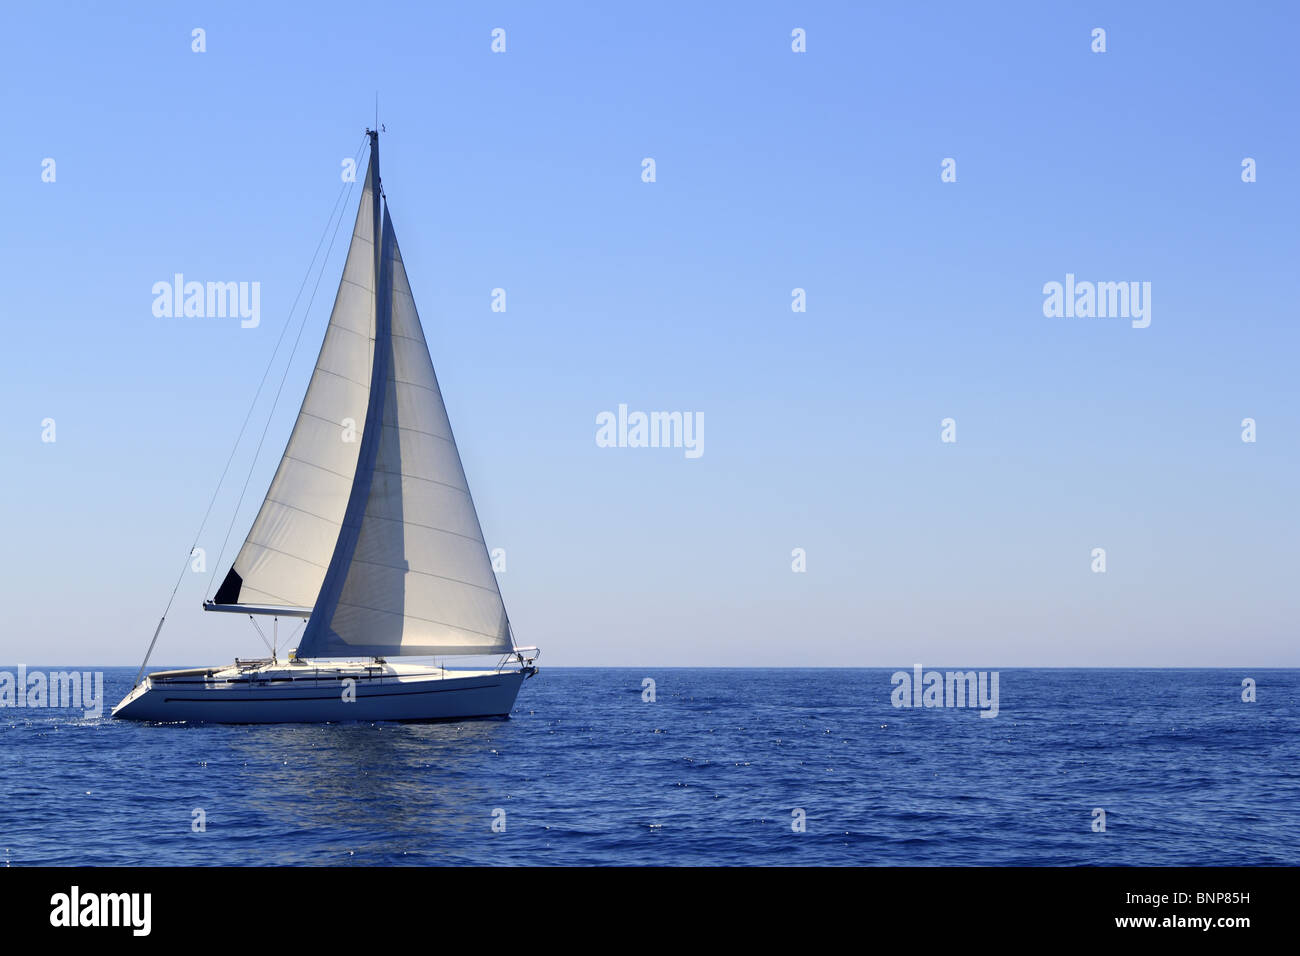 Beau voilier bateau à voile mer Méditerranée bleu horizon de l'océan Banque D'Images